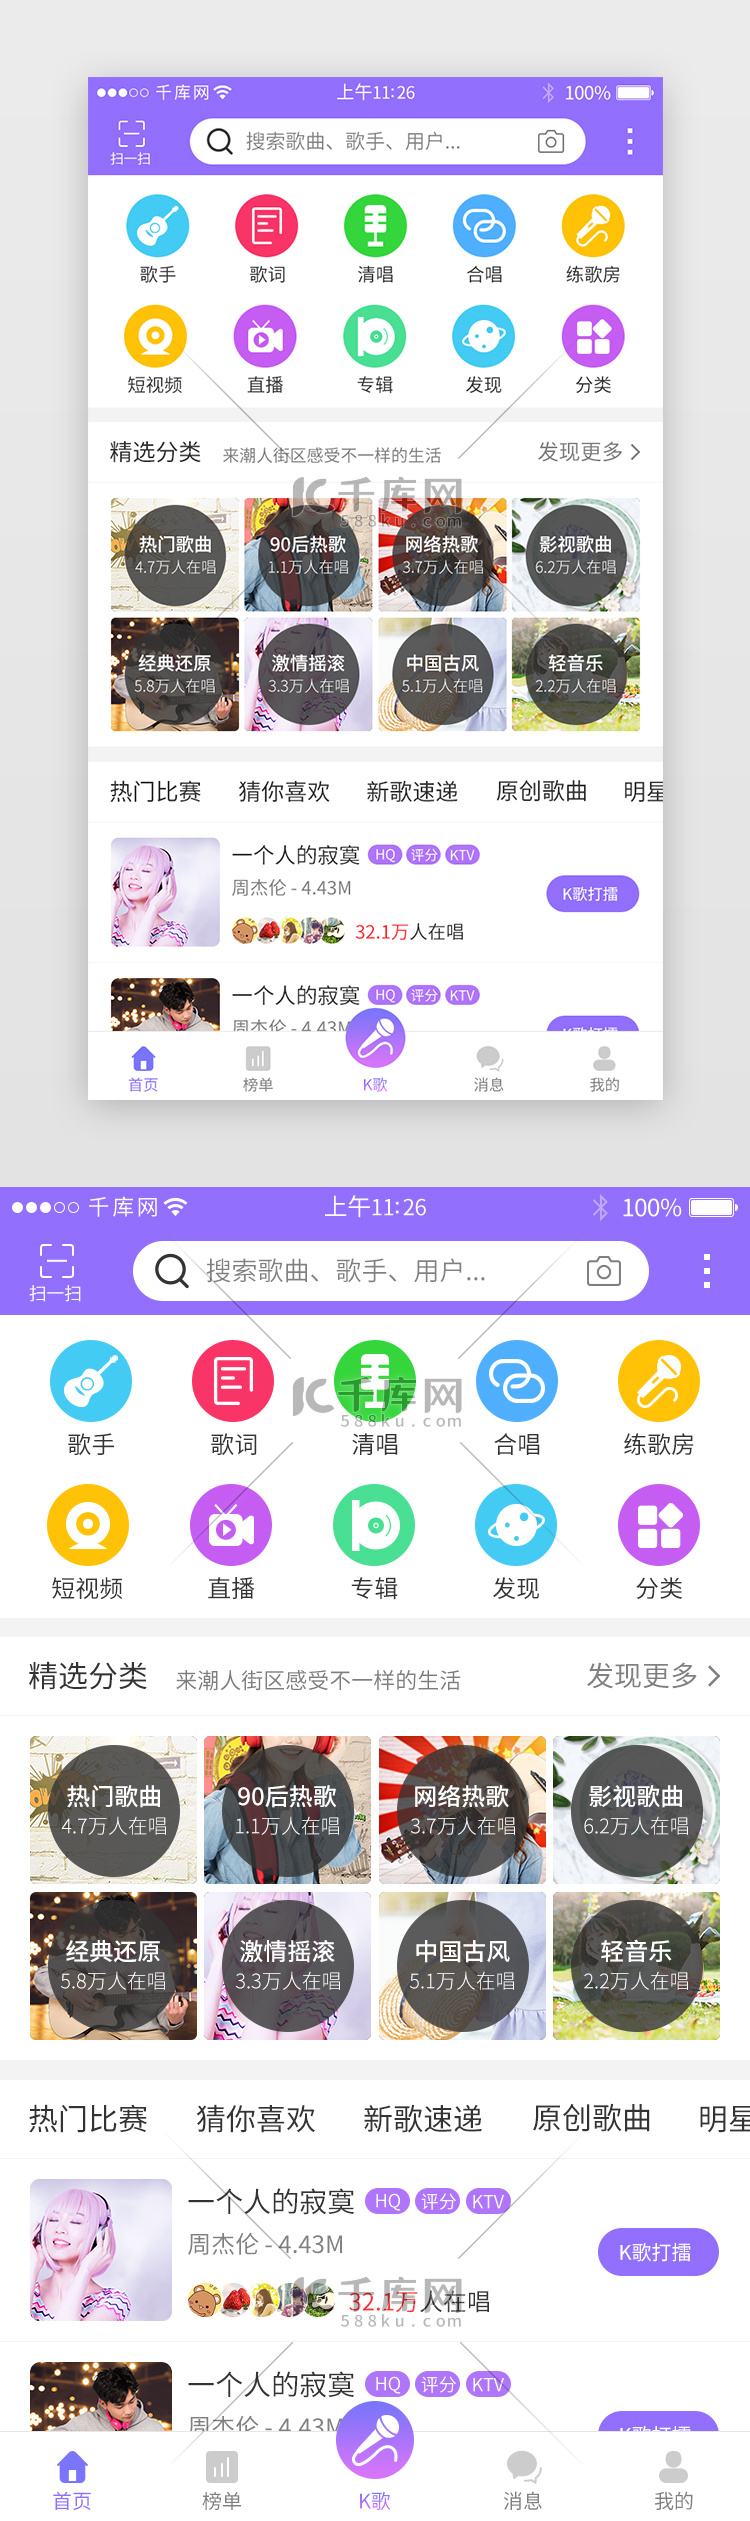 紫色系音乐K歌app界面模板